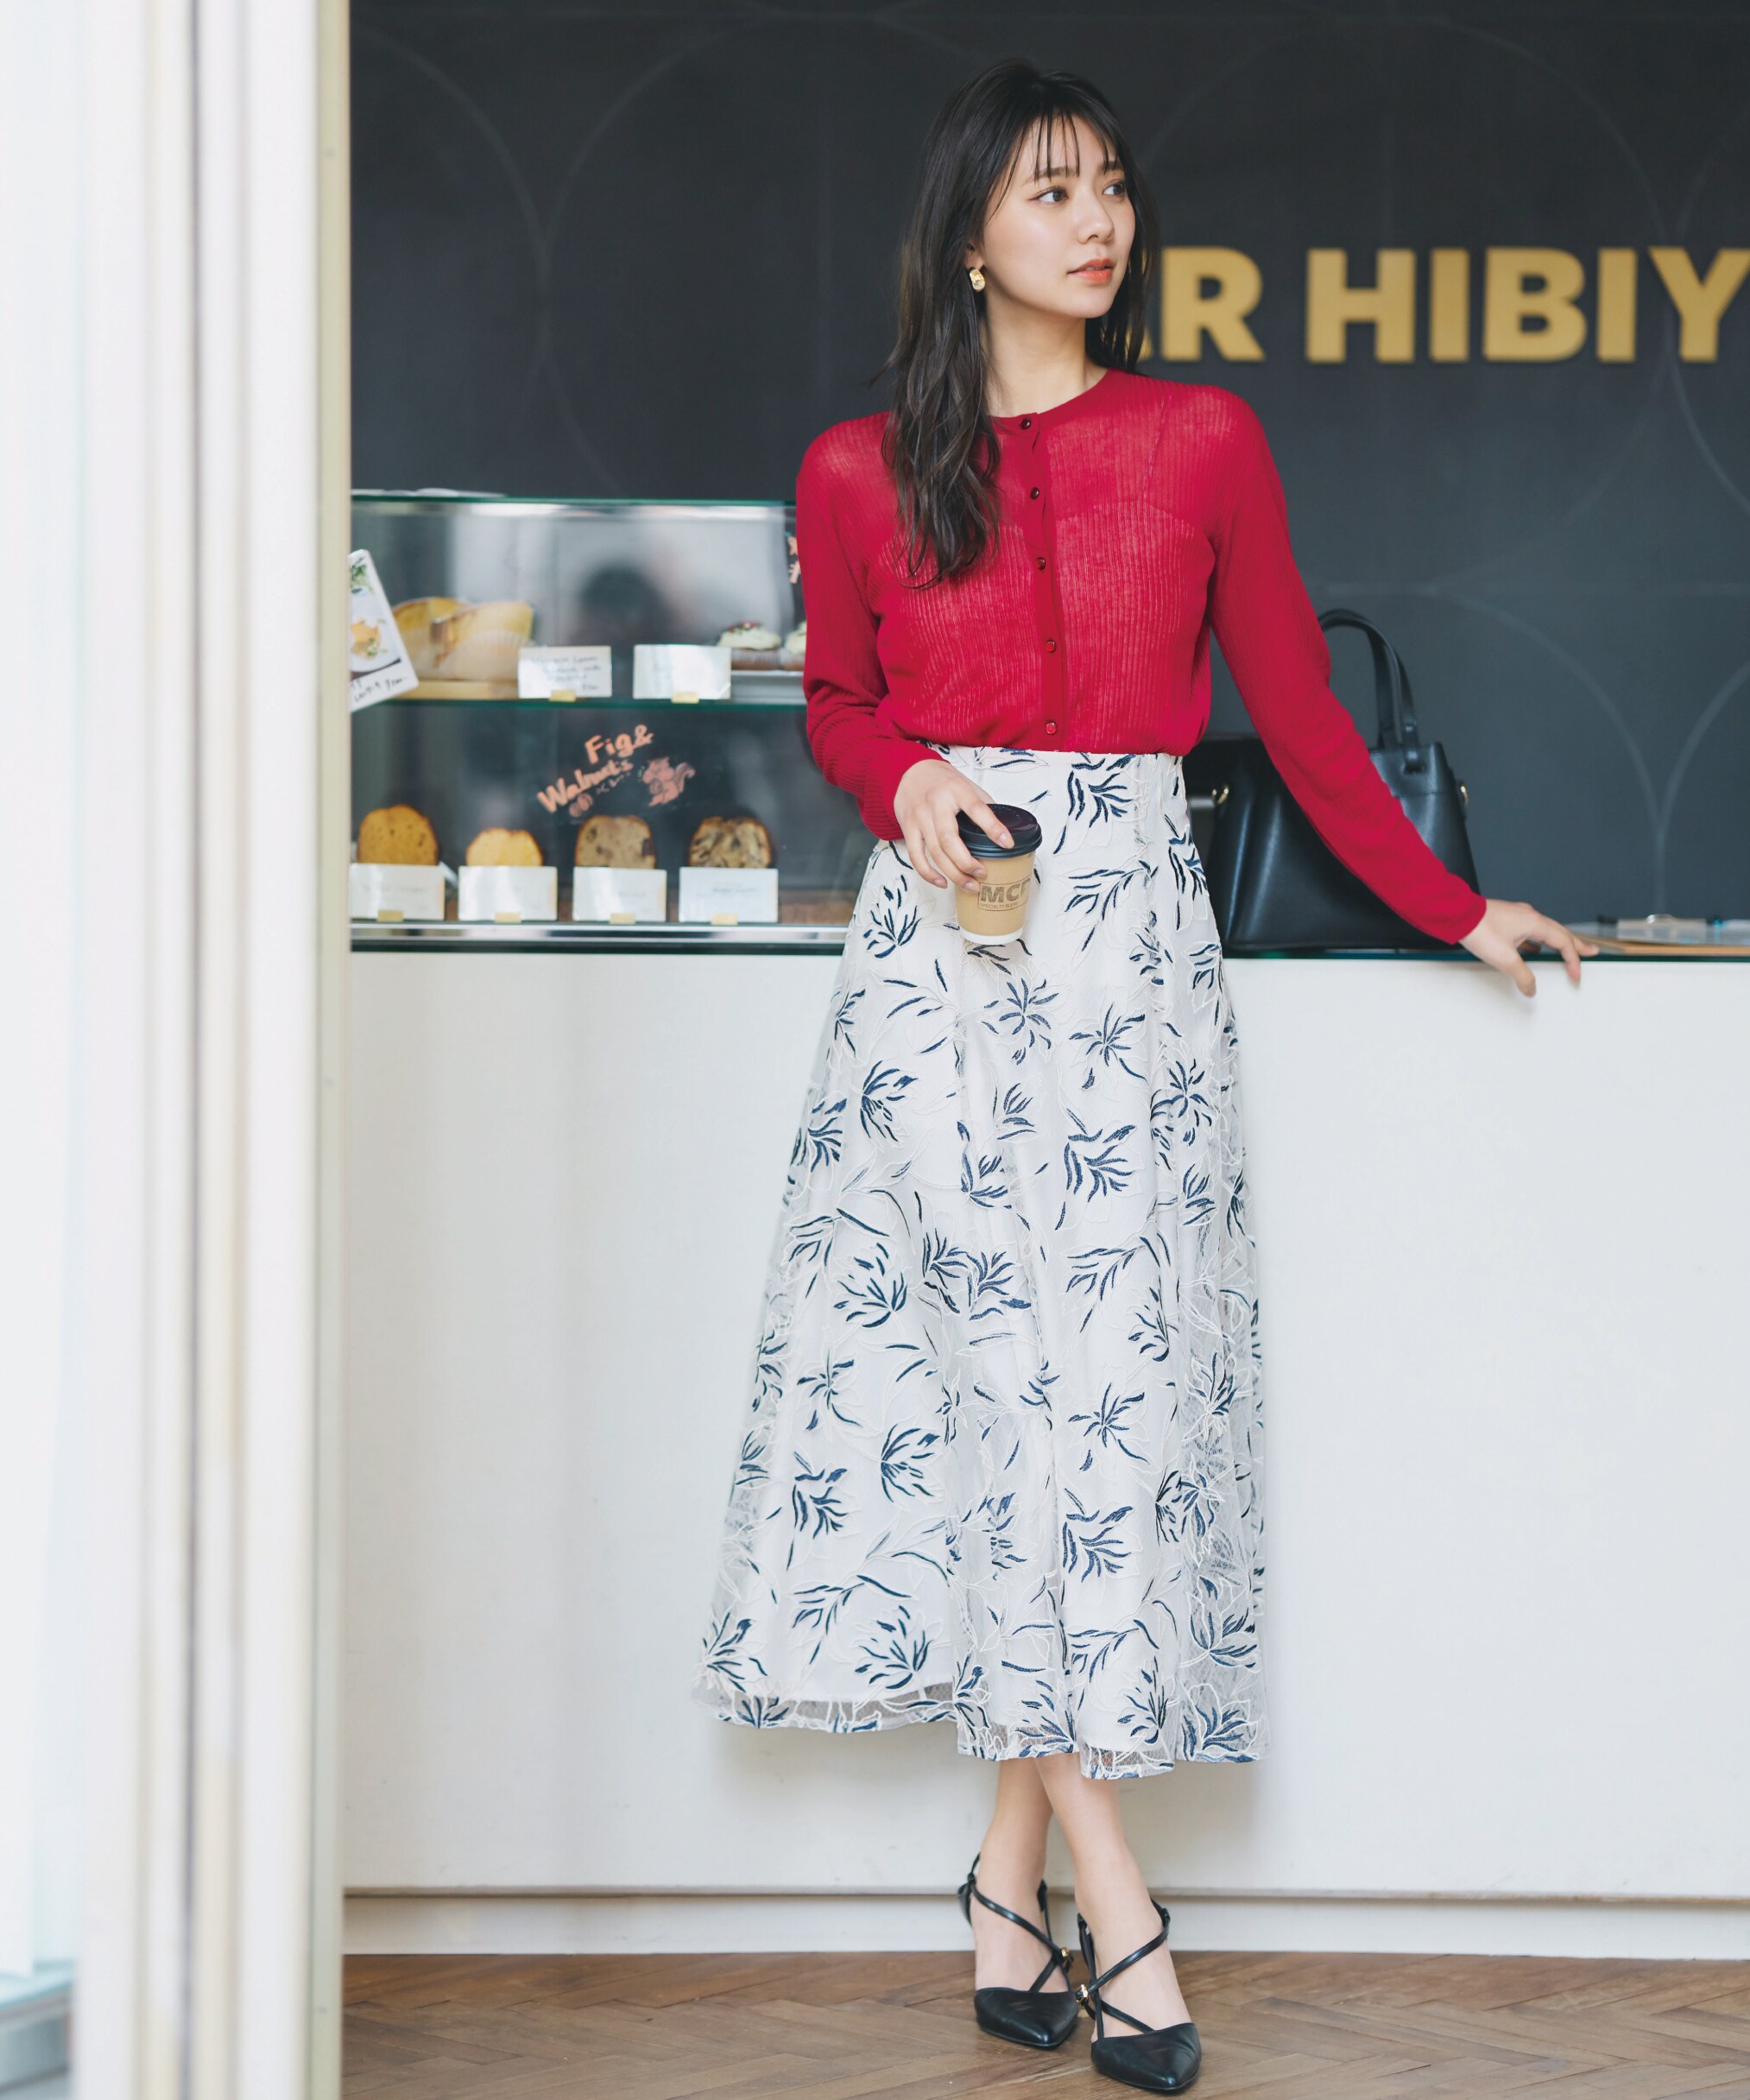 フラワーオーガン刺繍スカート|PROPORTION BODY DRESSING